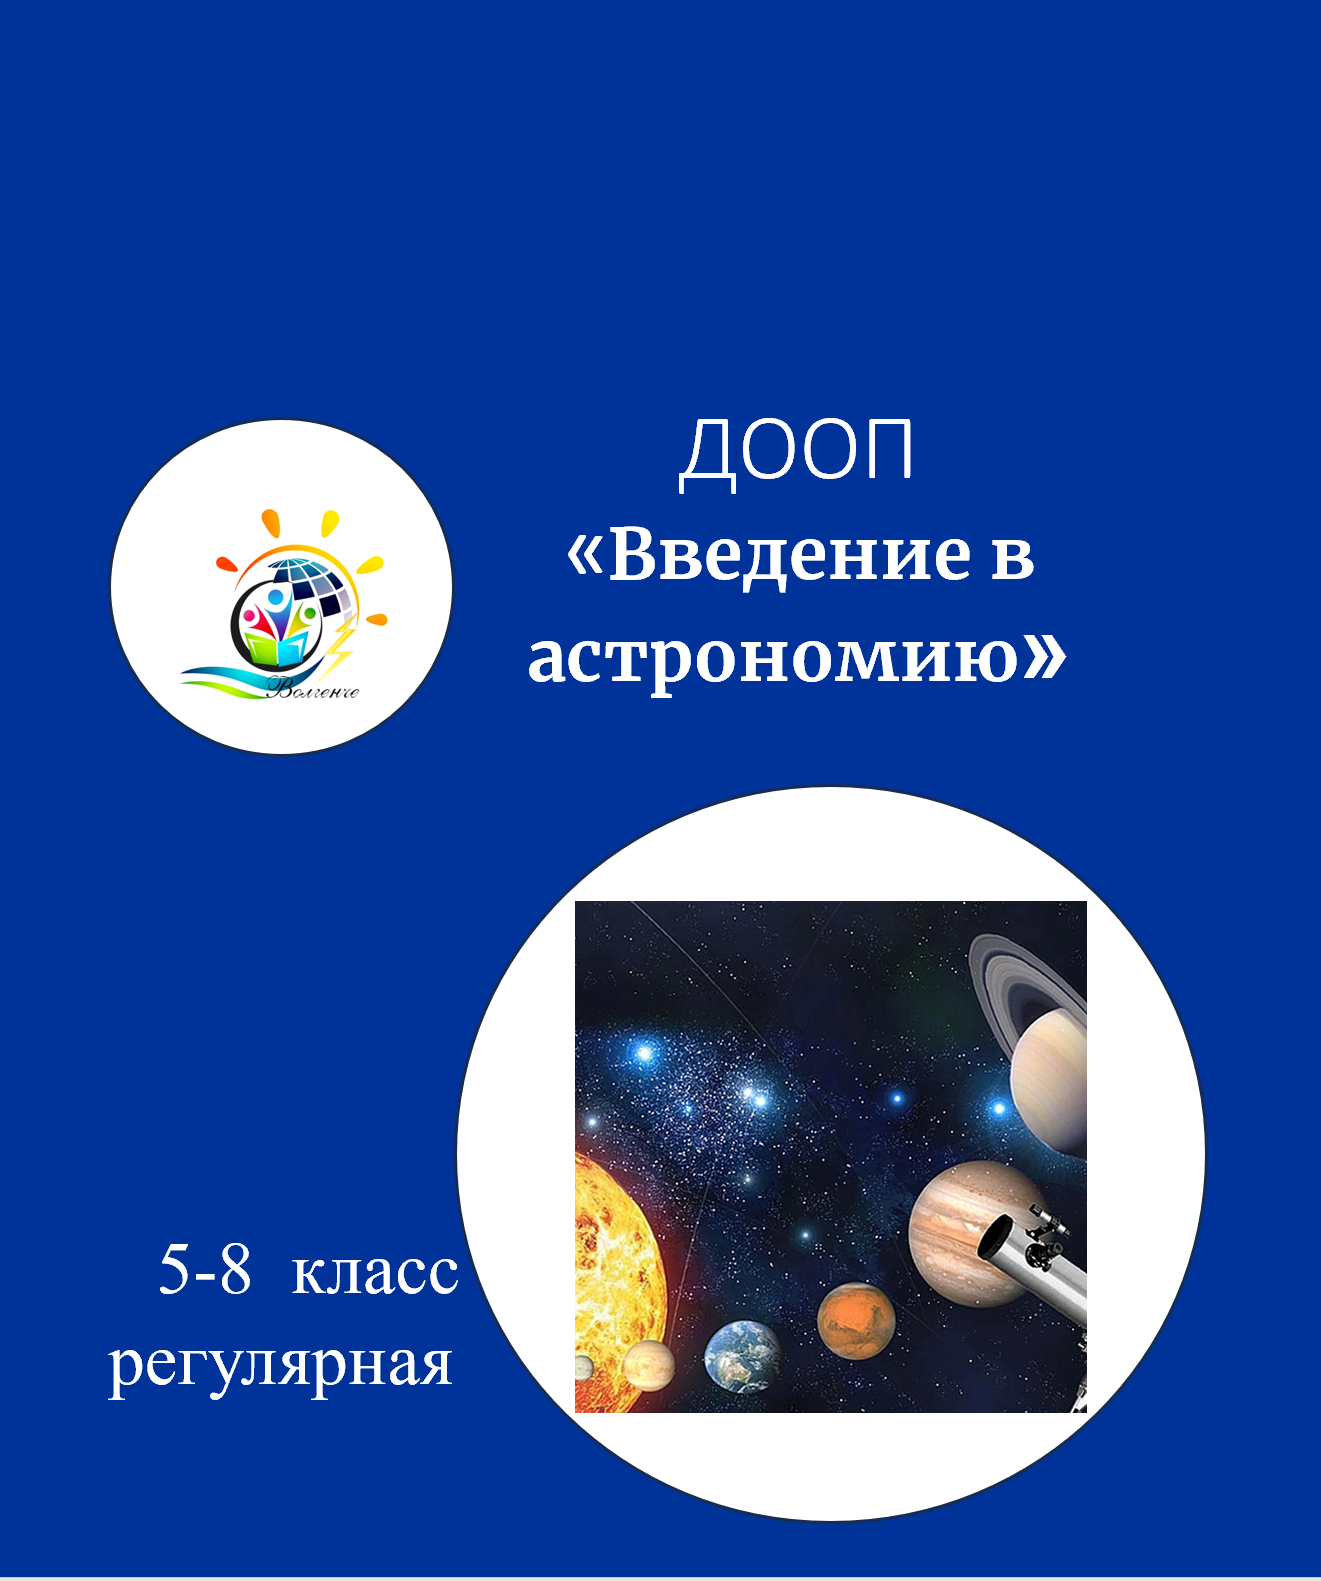 ДООП "Введение в астрономию"